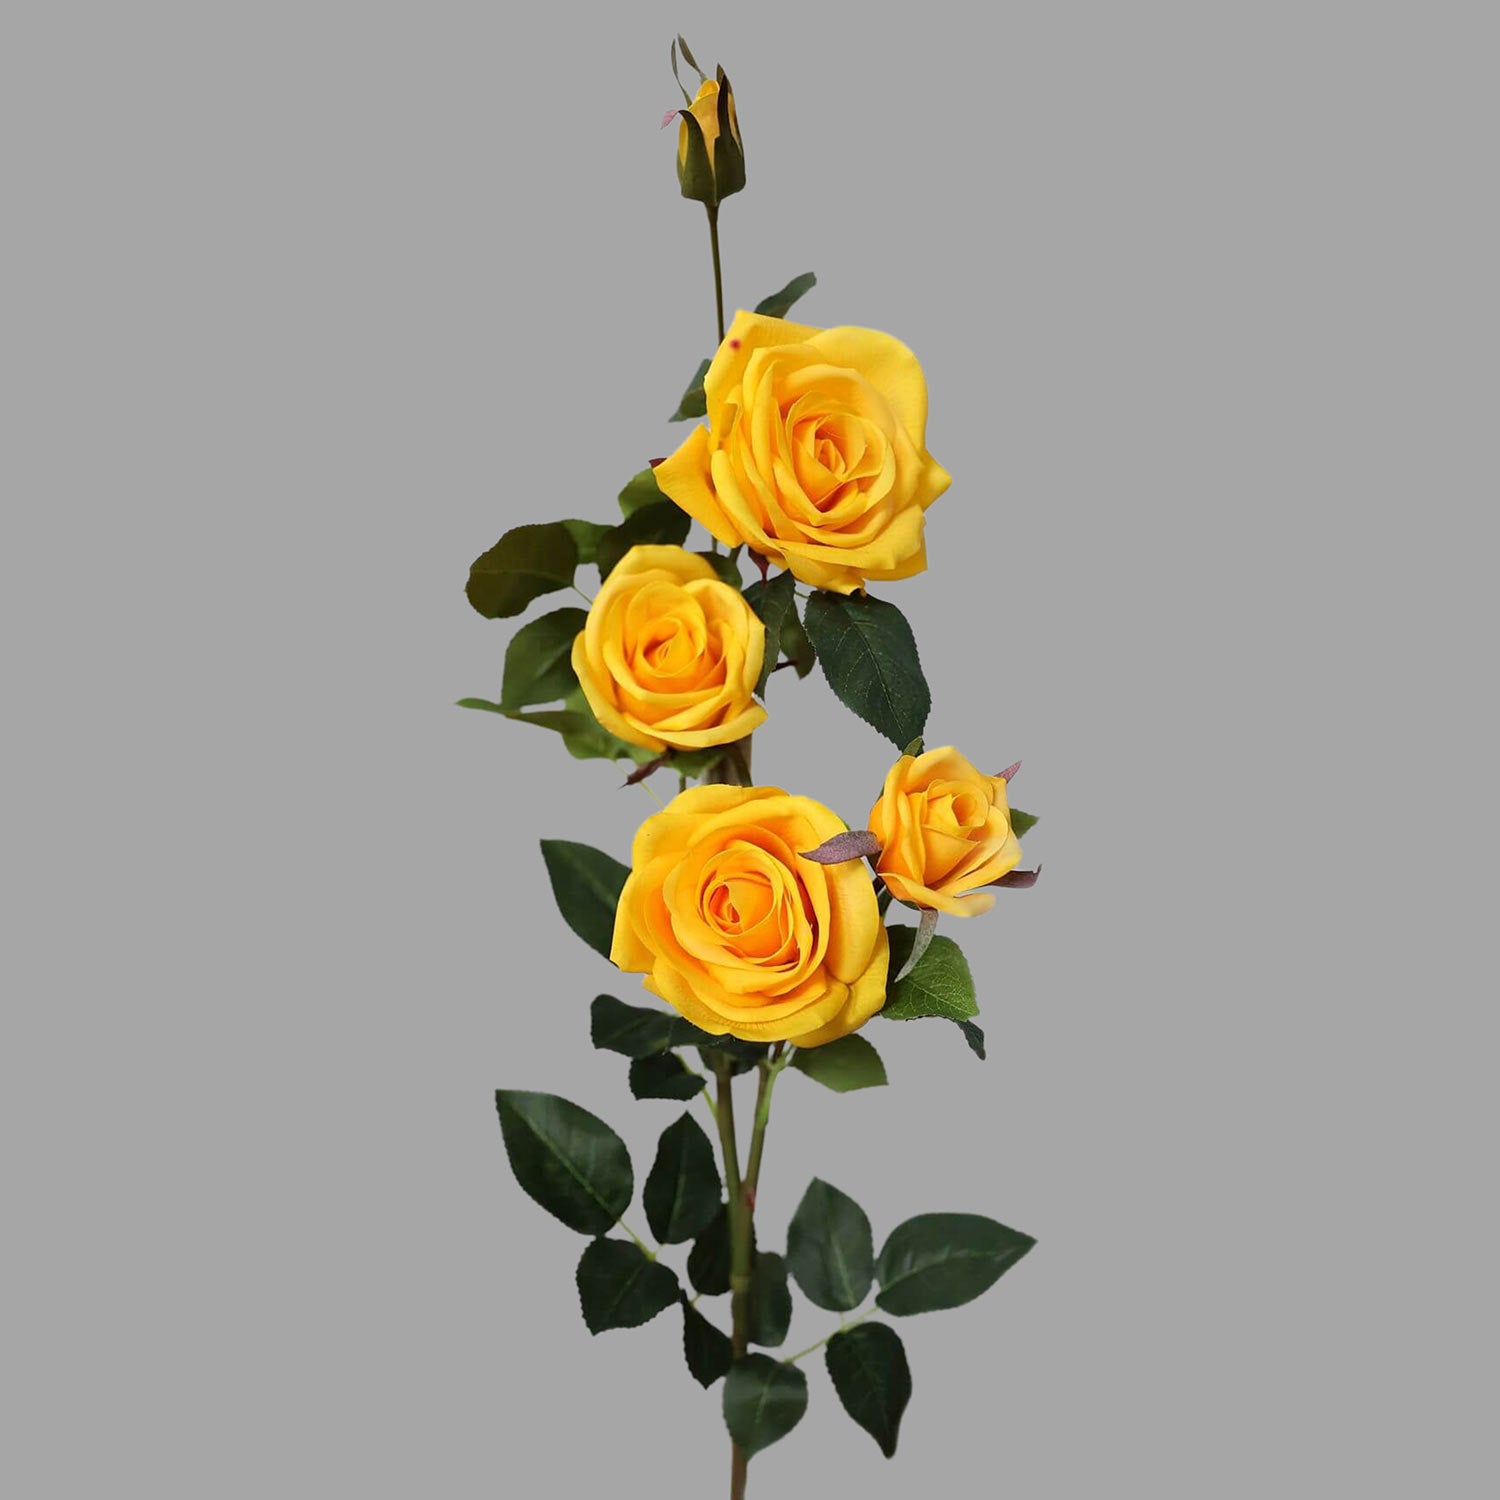 Rózsa művirág, sárga színű, nyílt és bimbós virágfejekkel.